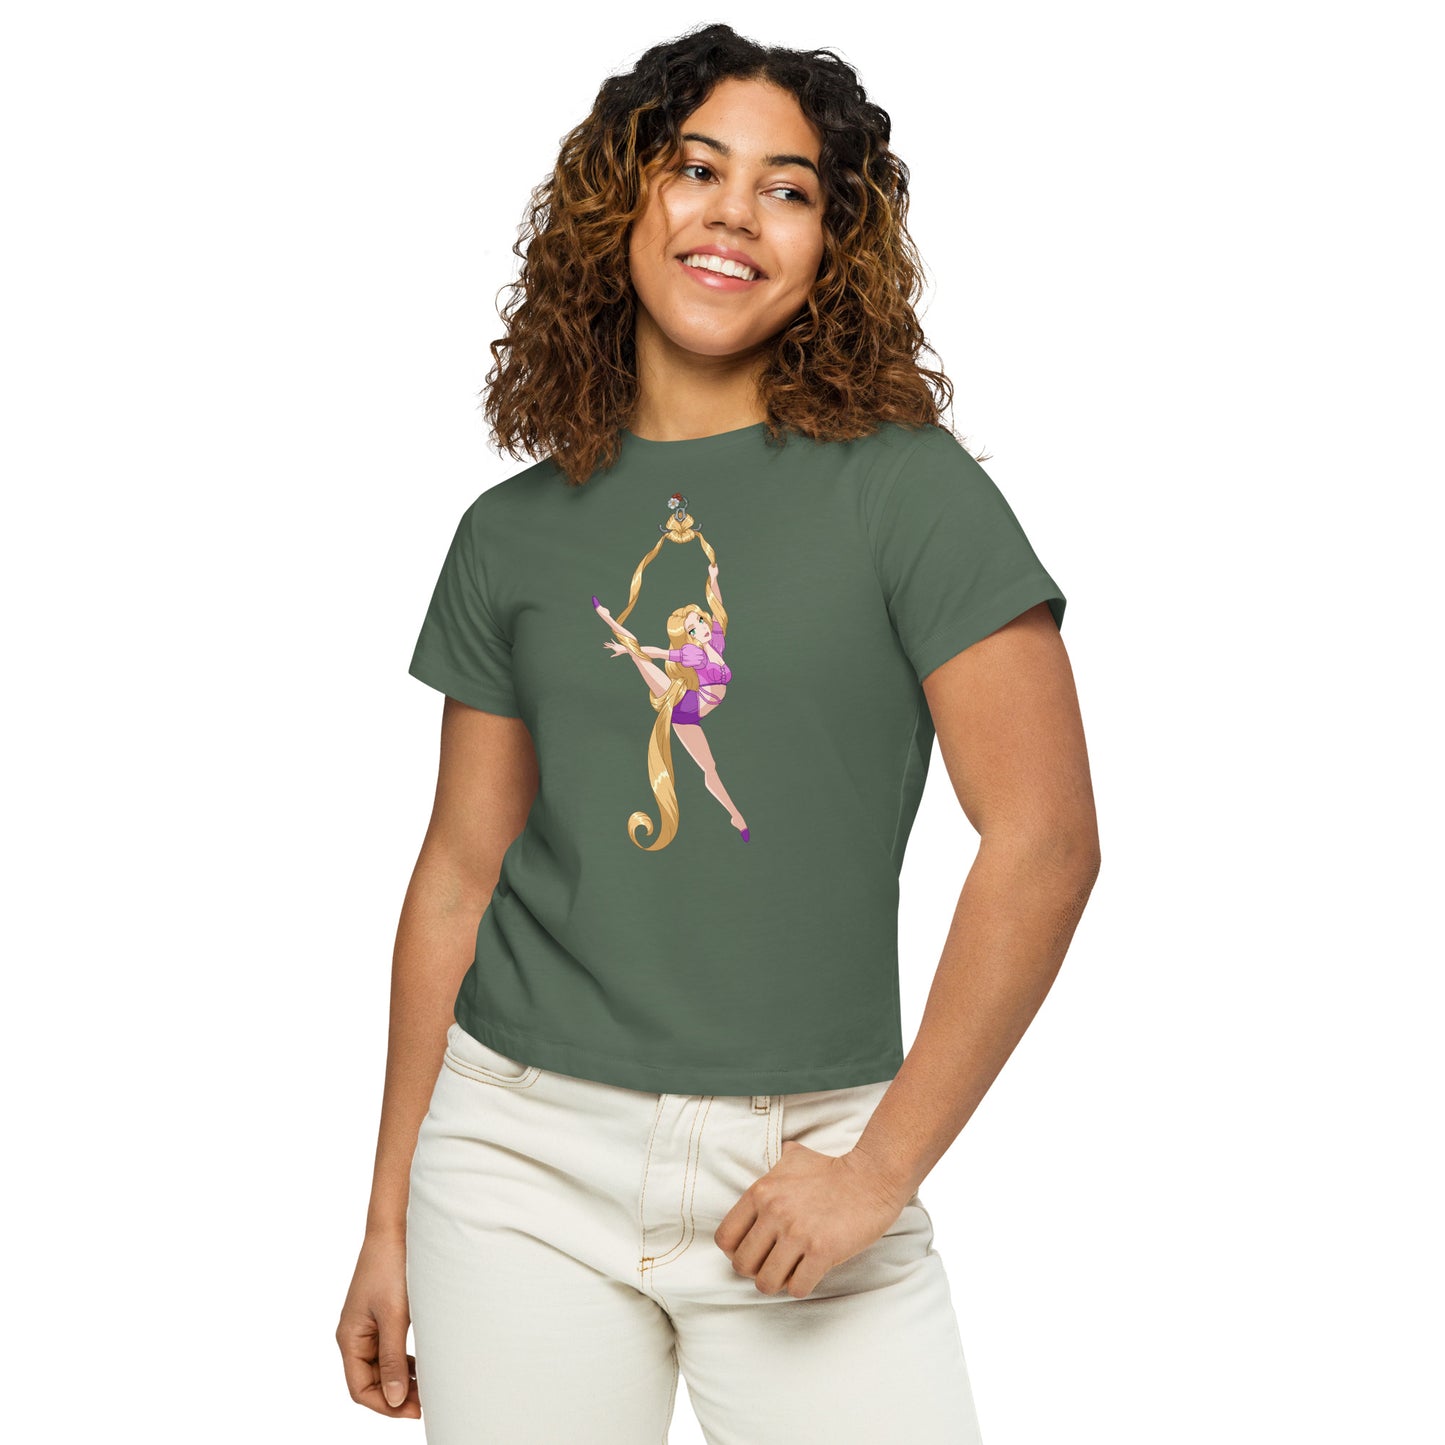 Aerial Silks - Women’s high-waisted t-shirt